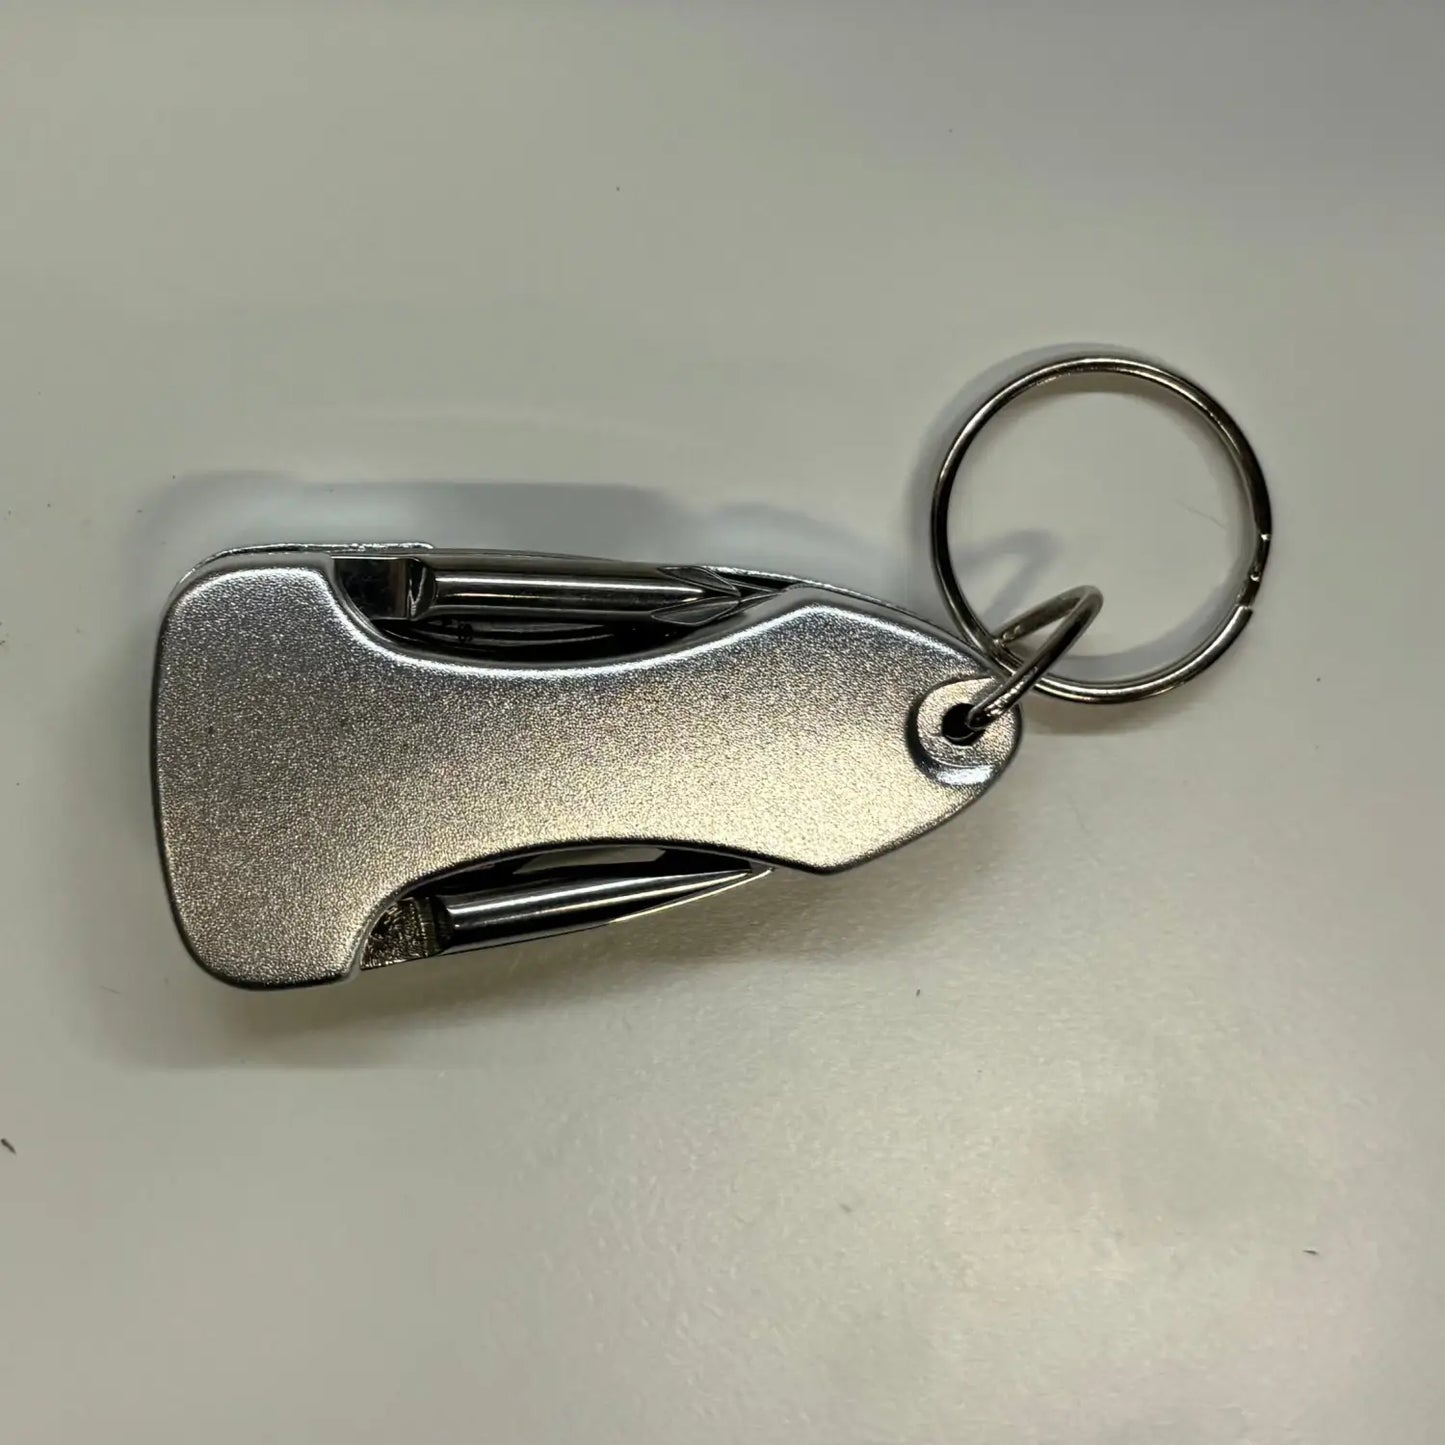 Multitool Keychain - Silver - Multitool